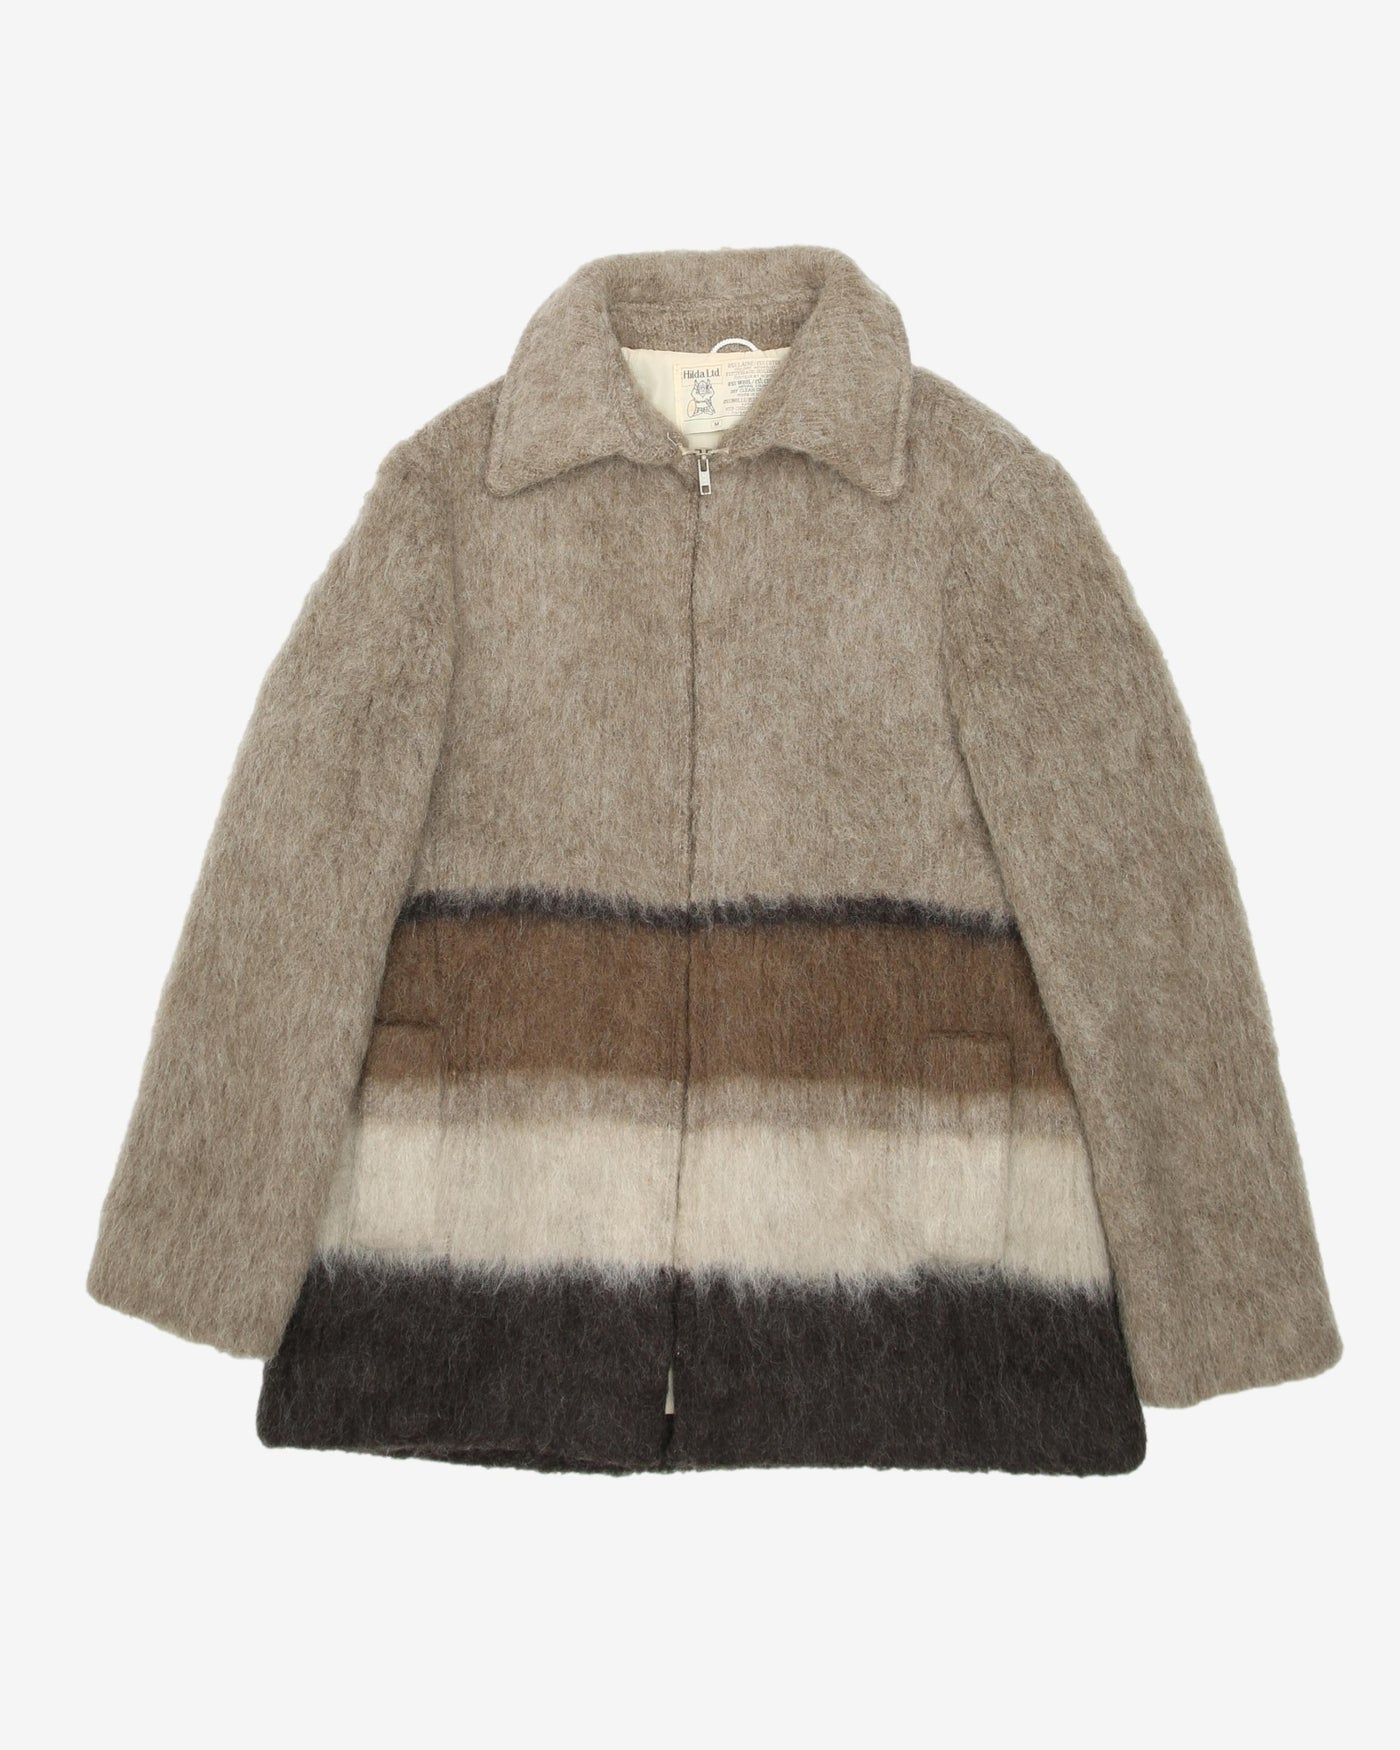 1960s Hilda Ltd Icelandic Wool Jacket - M